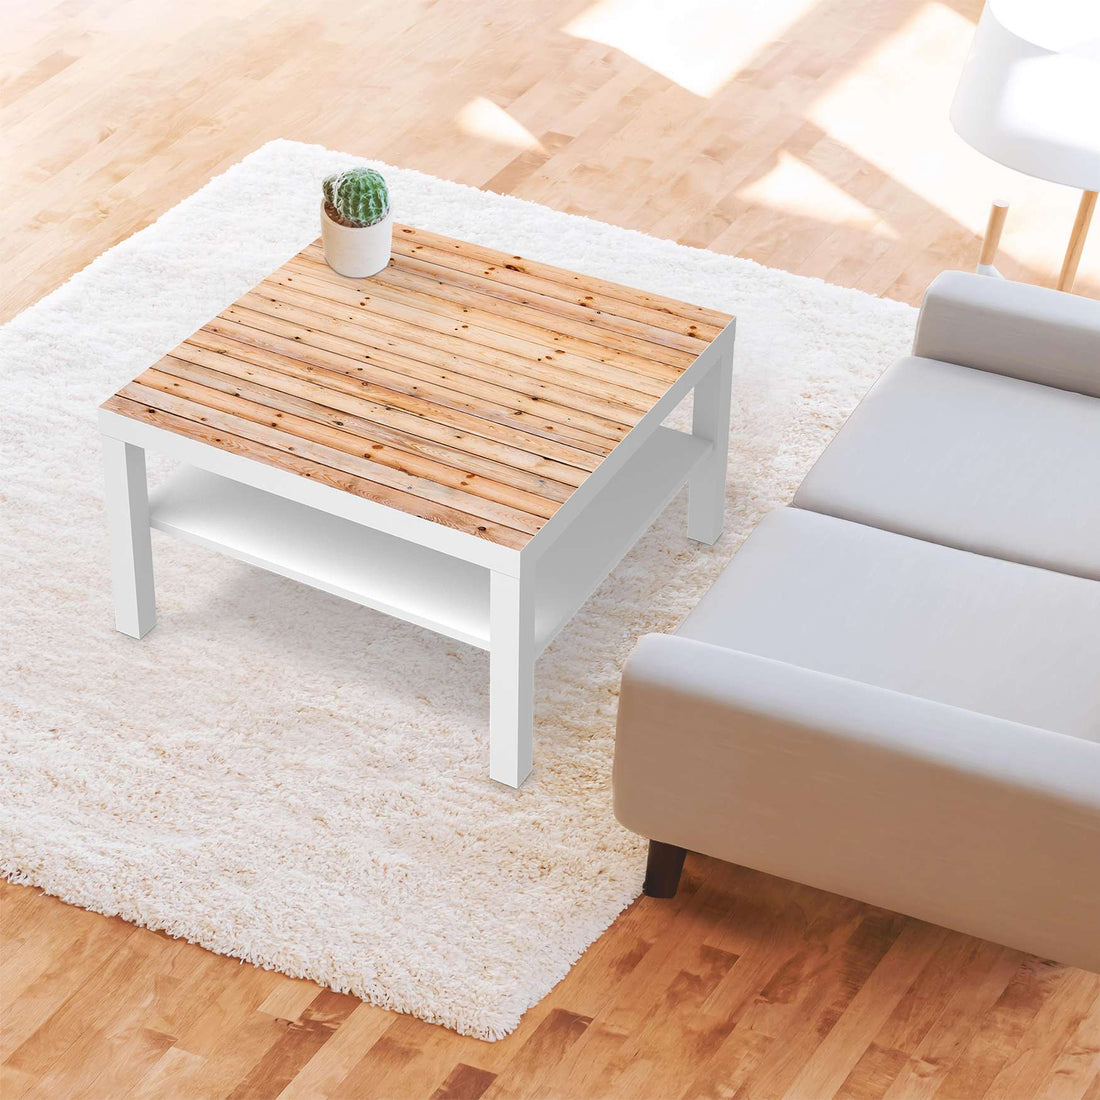 Selbstklebende Folie Bright Planks - IKEA Lack Tisch 78x78 cm - Wohnzimmer